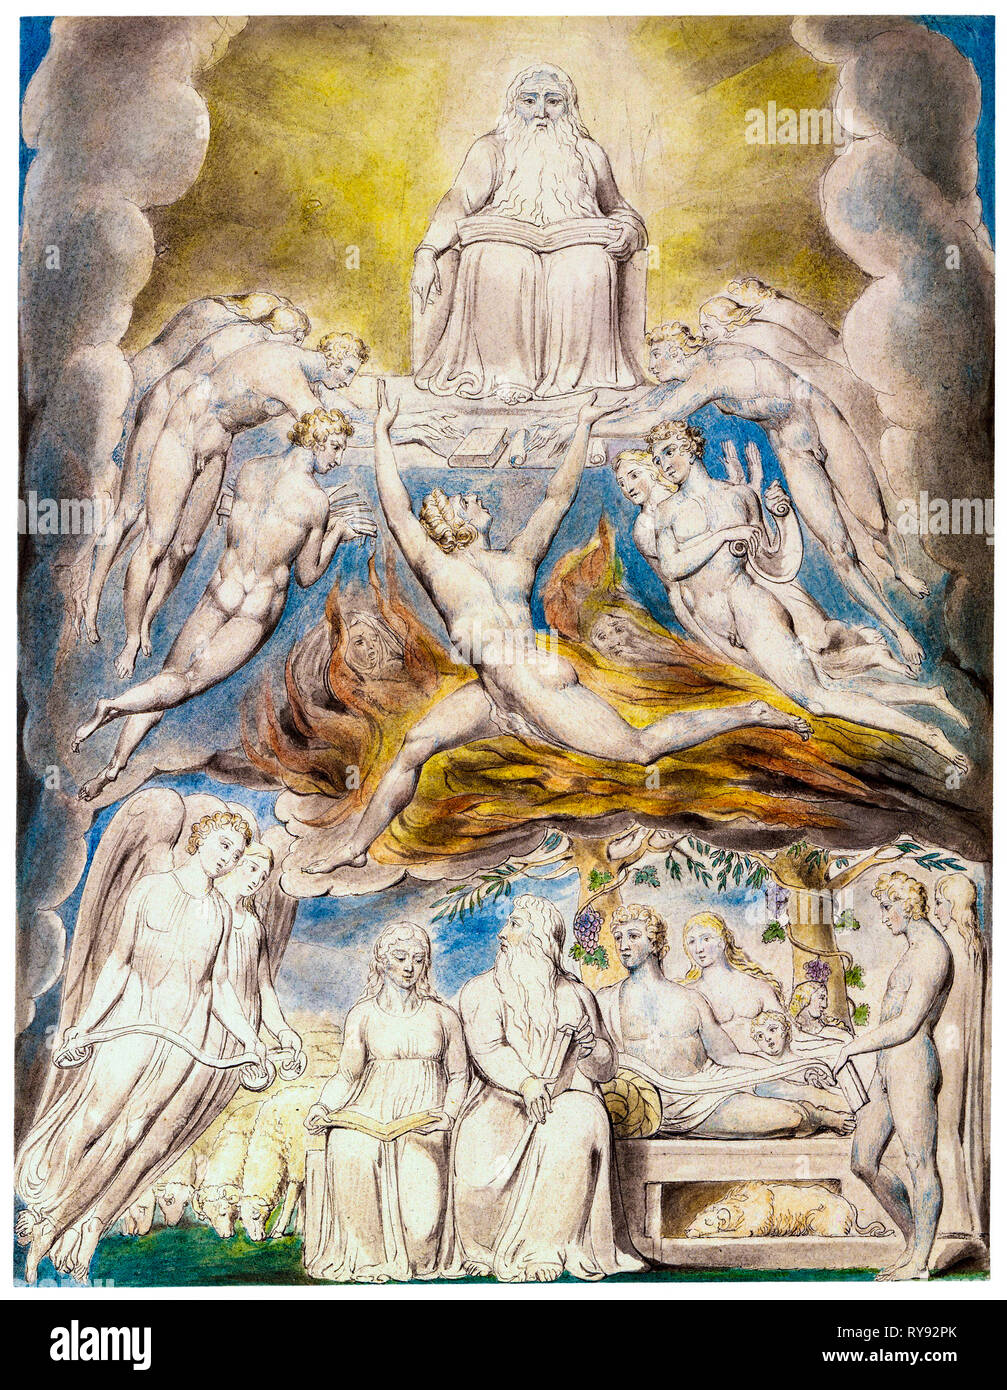 Satan avant le trône de Dieu, peinture aquarelle sur plume et encre par William Blake, 1805 Banque D'Images